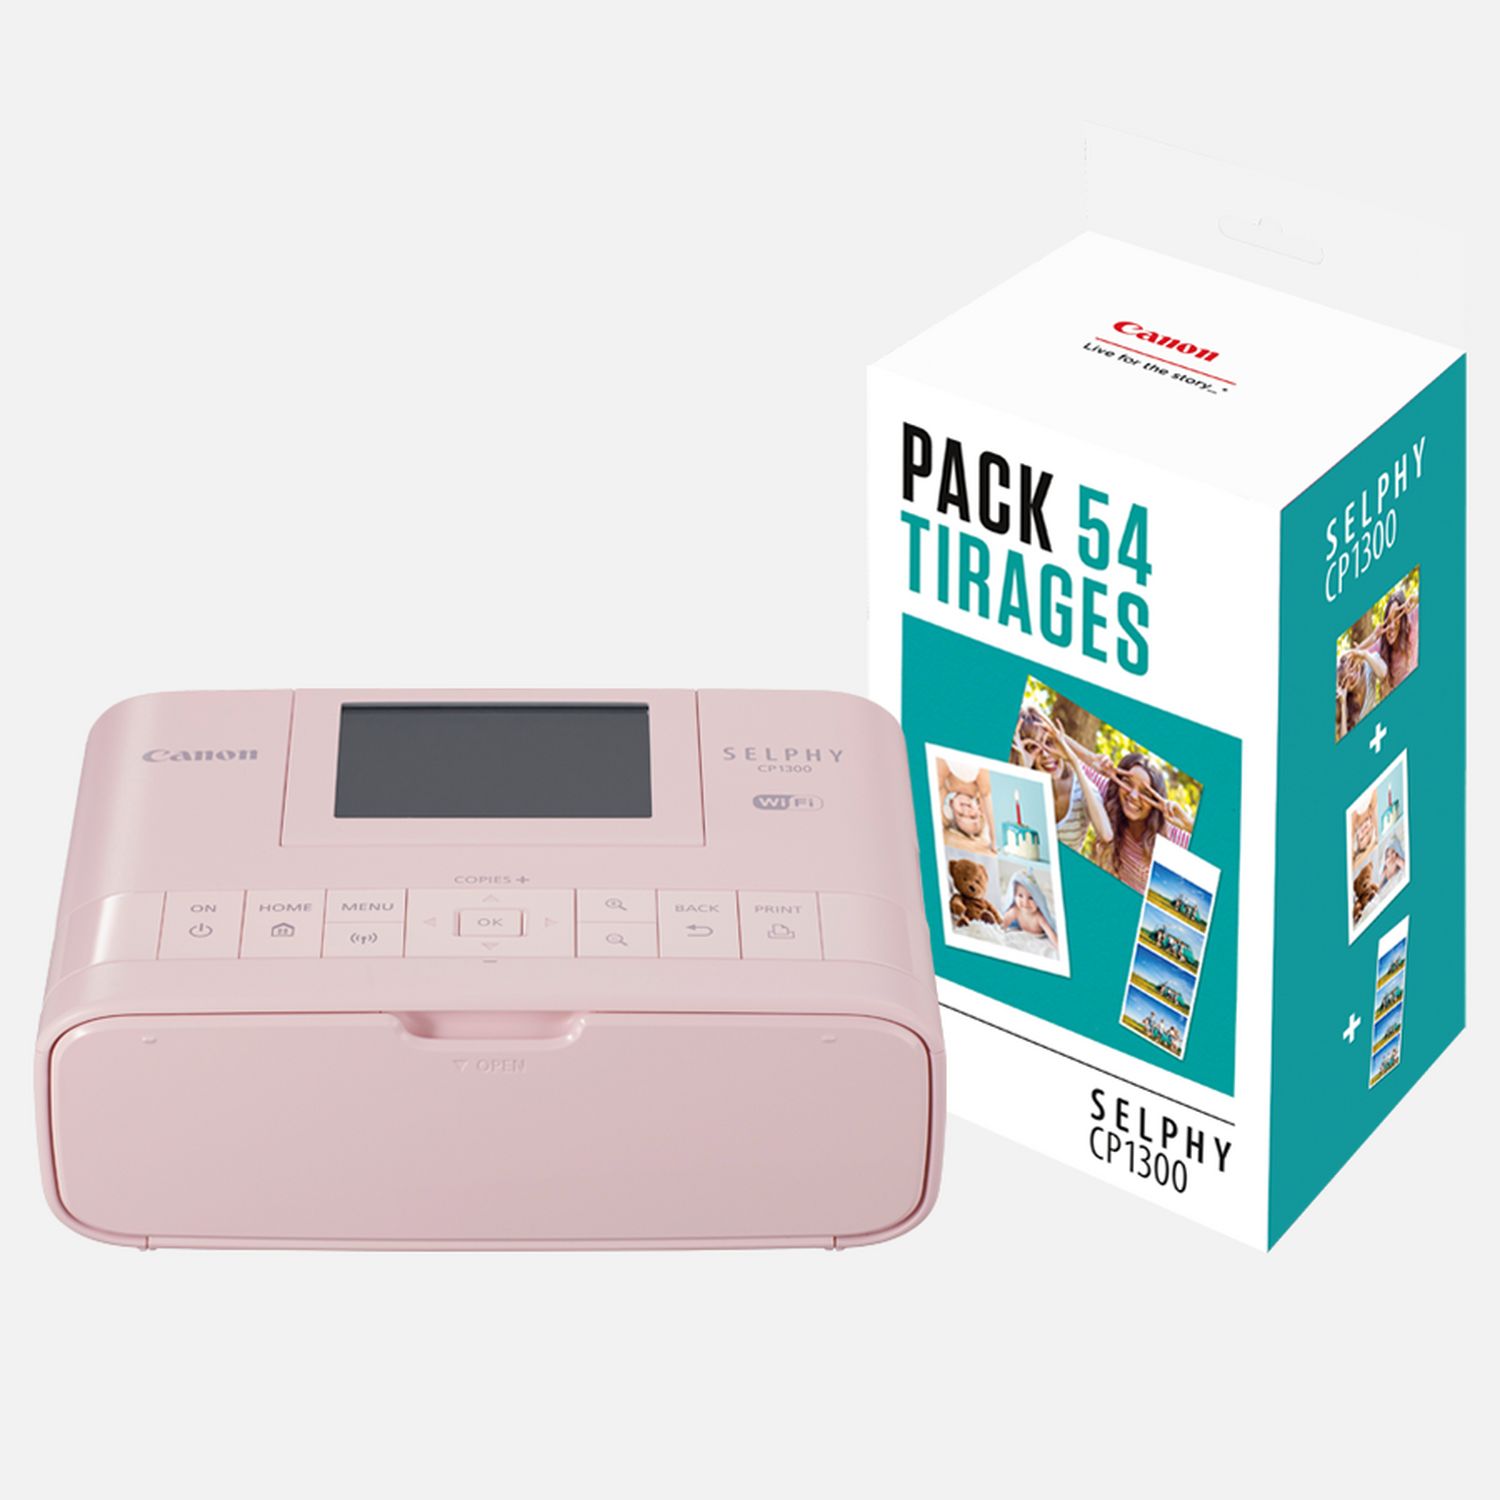 Stampante fotografica portatile Canon SELPHY CP1300 a colori, rosa + Set inchiostro colore/carta